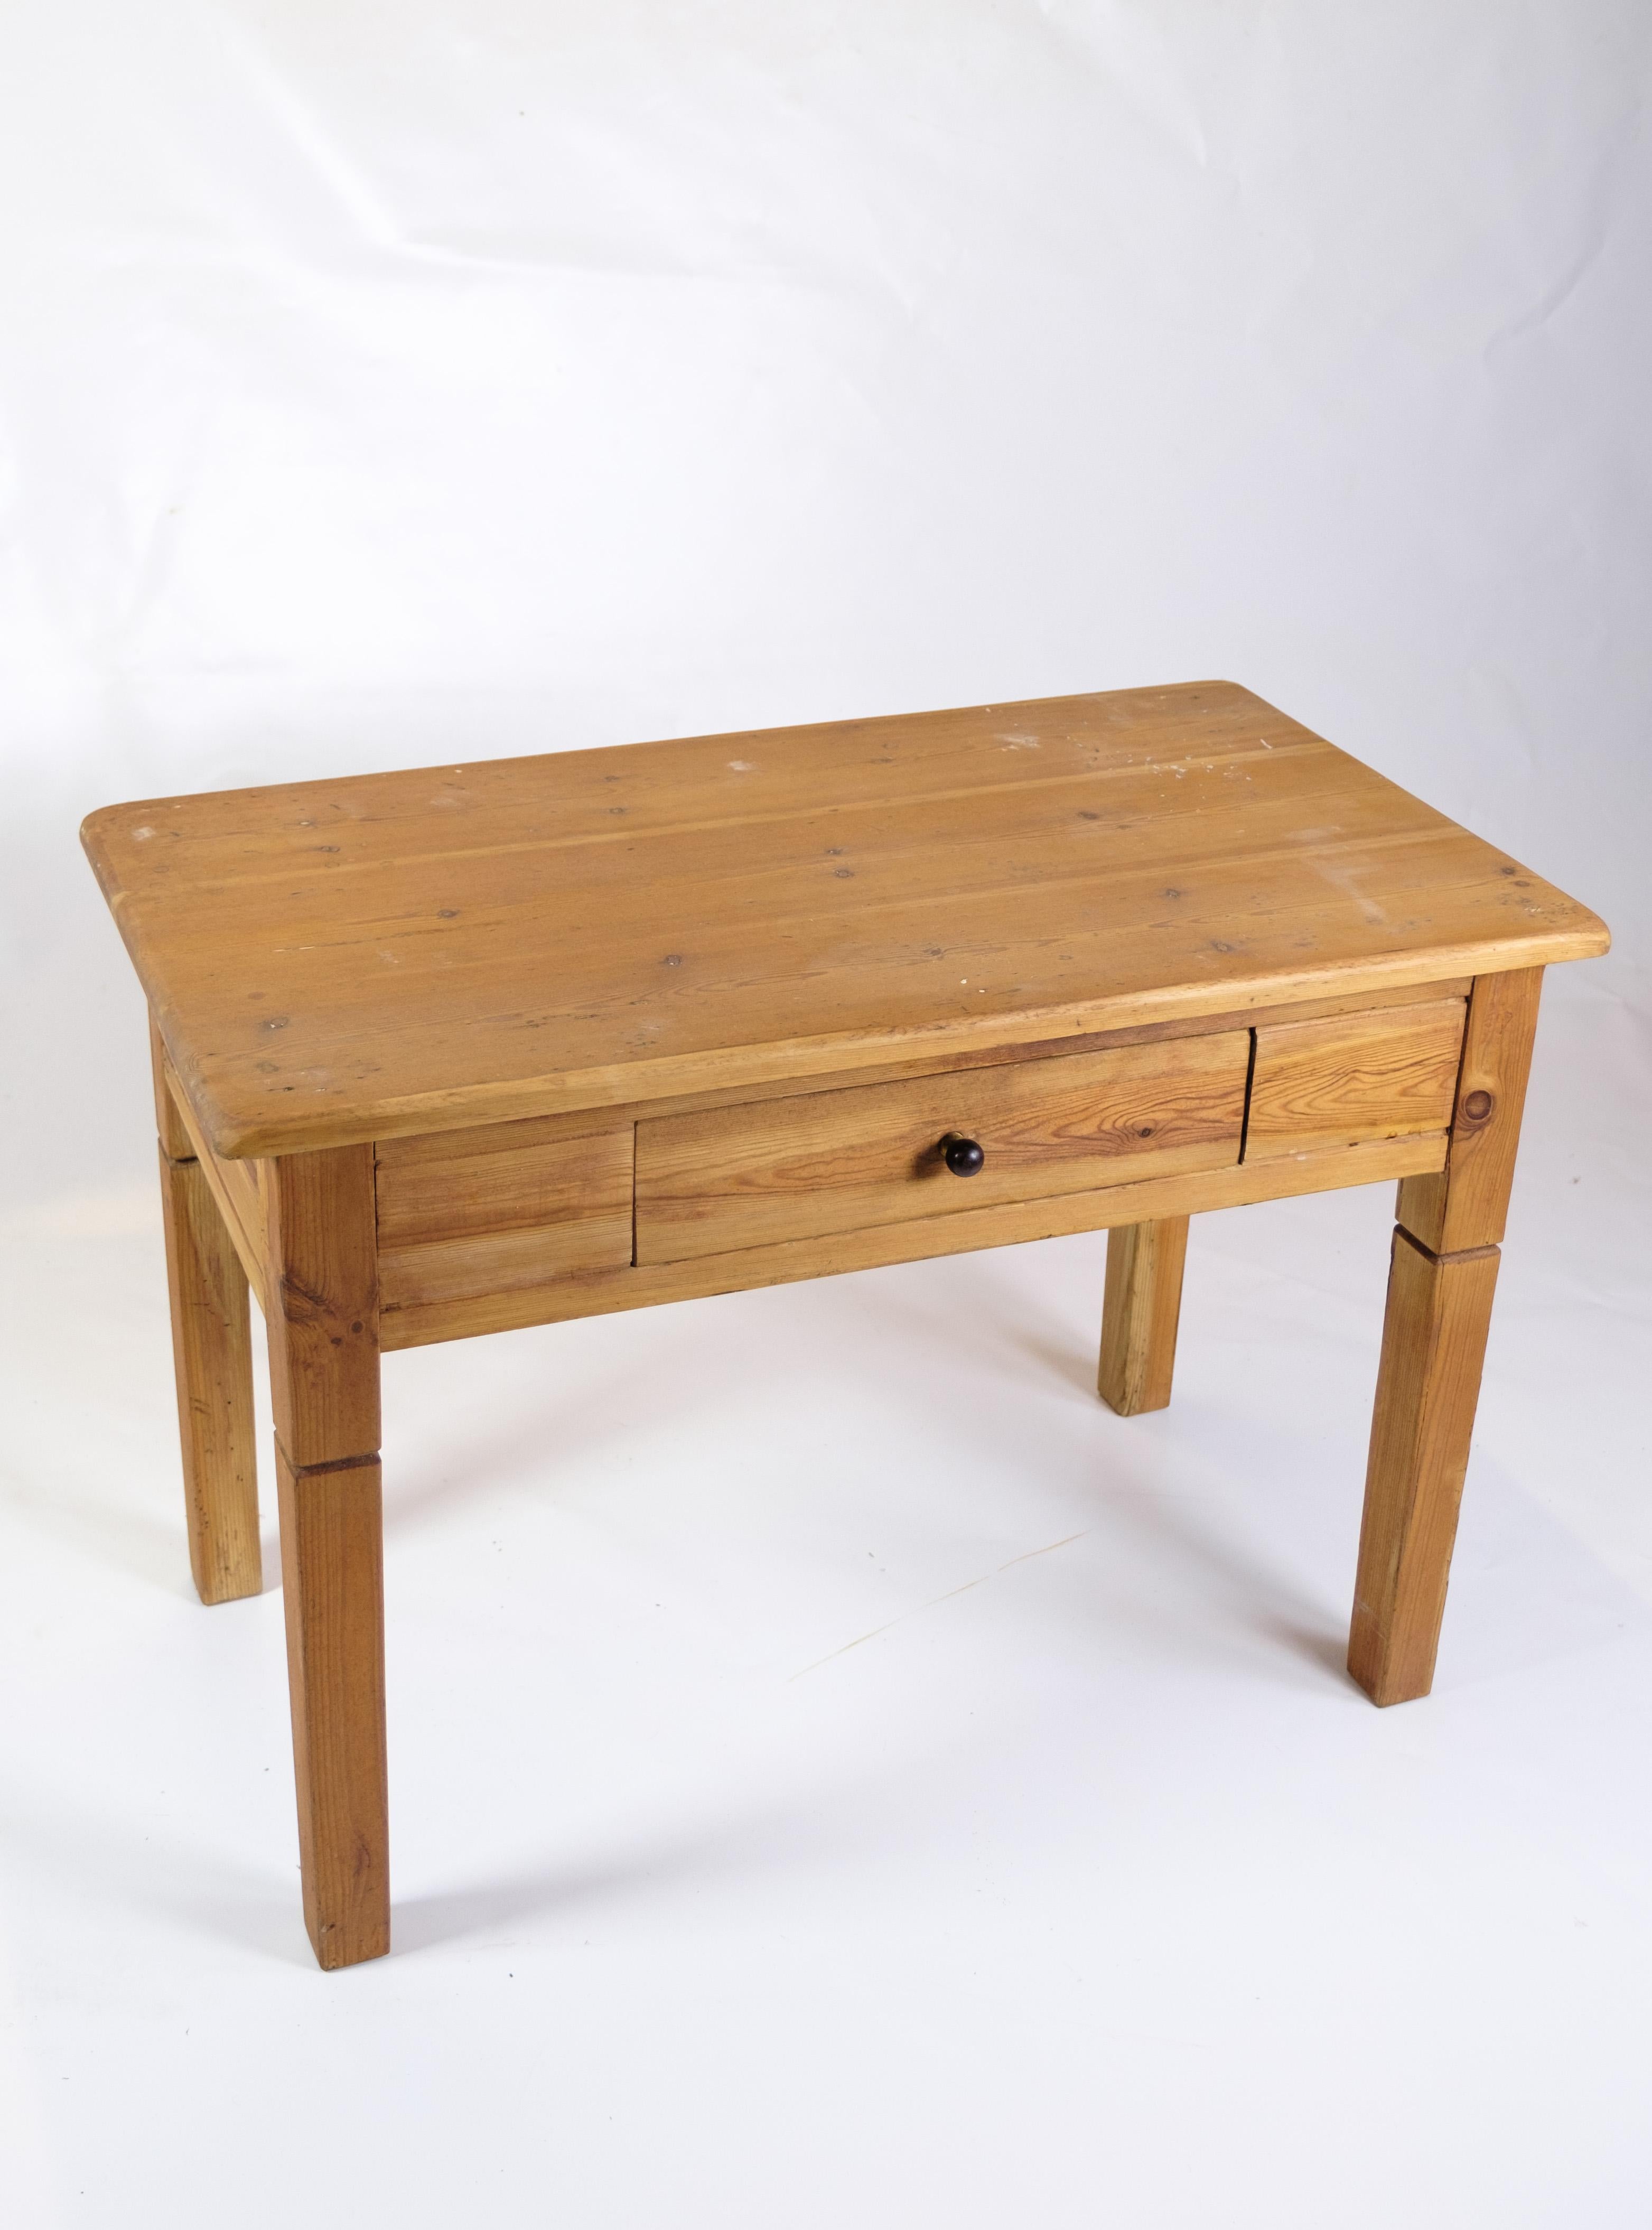 Cette table d'appoint en pin avec un tiroir, datant des années 1920, est un charmant exemple de mobilier du début du XXe siècle. Sa construction simple mais robuste et son aspect vintage ajoutent du caractère et un attrait nostalgique à n'importe